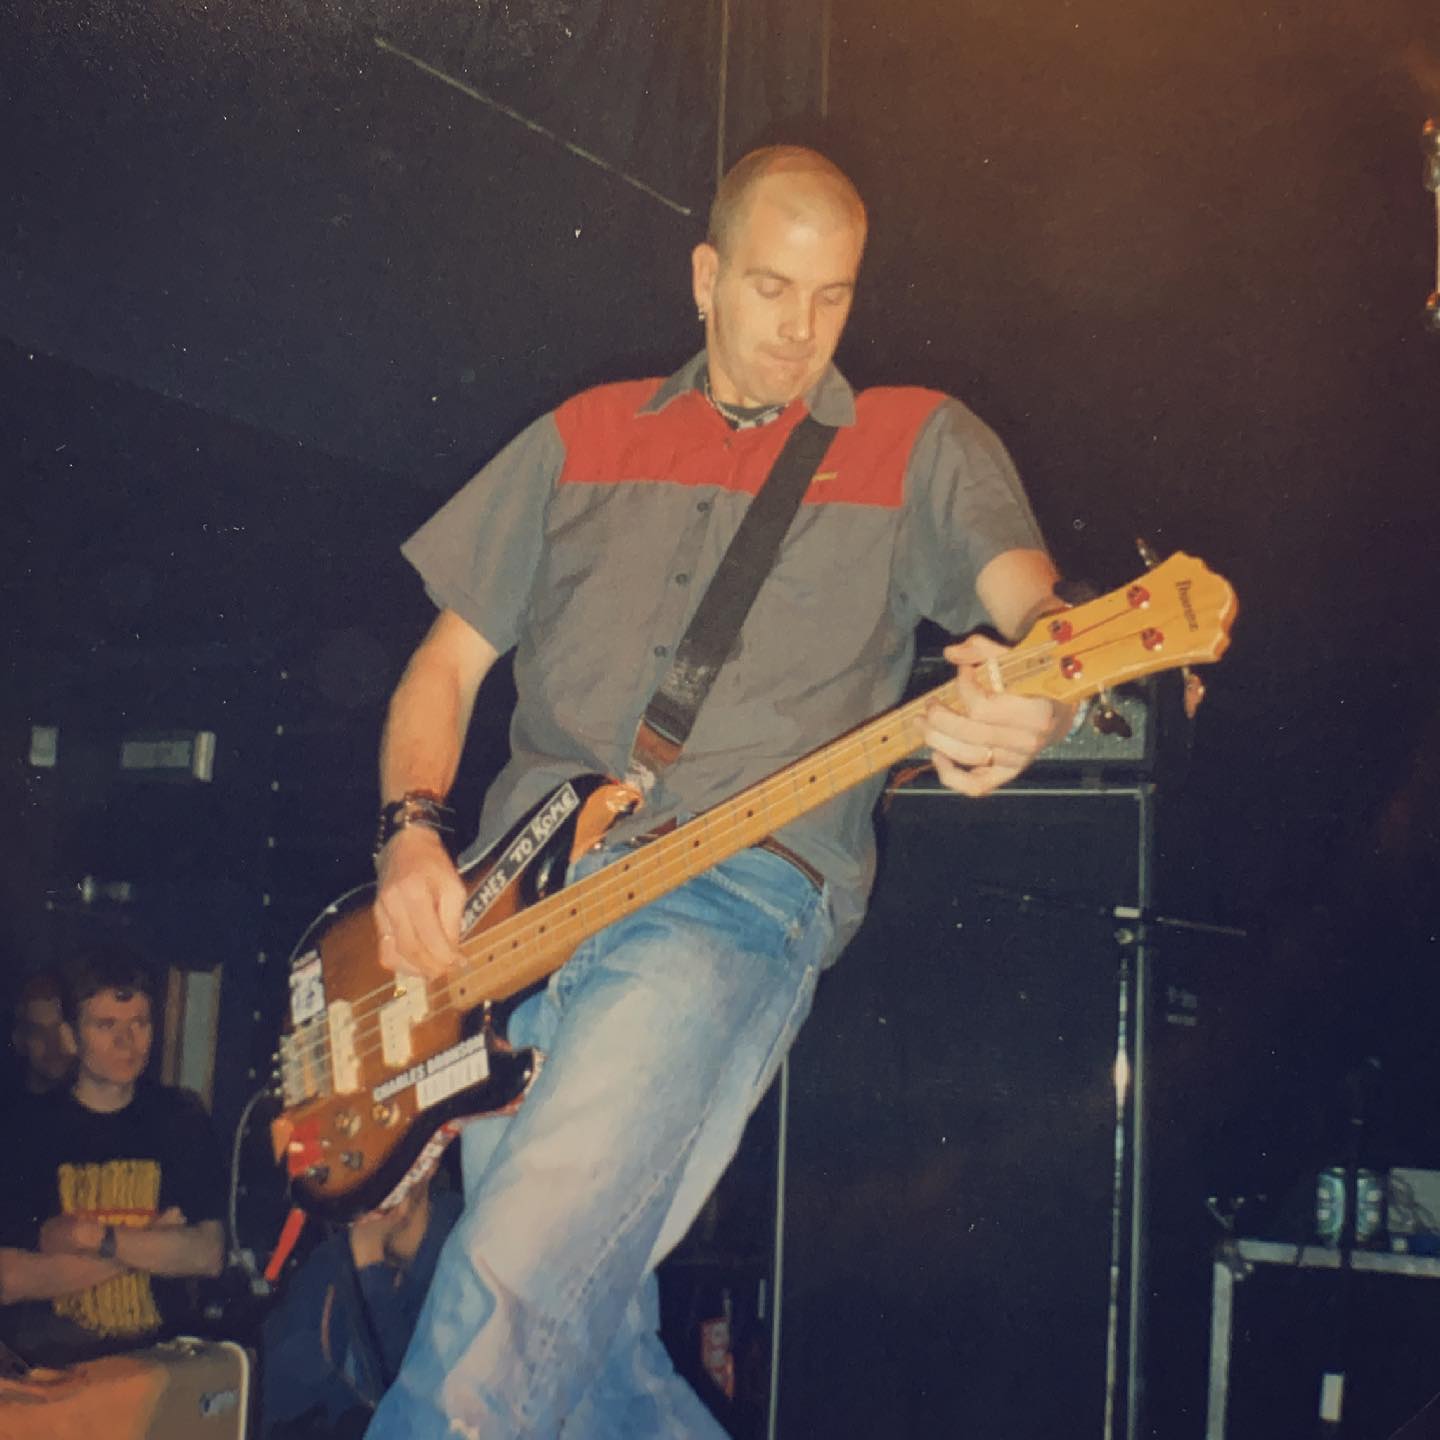 Seein’ Red - Bolwerk Sneek NL - 16 November 1996 #hardcore #punkrock #gigpic by @twentylandcrew